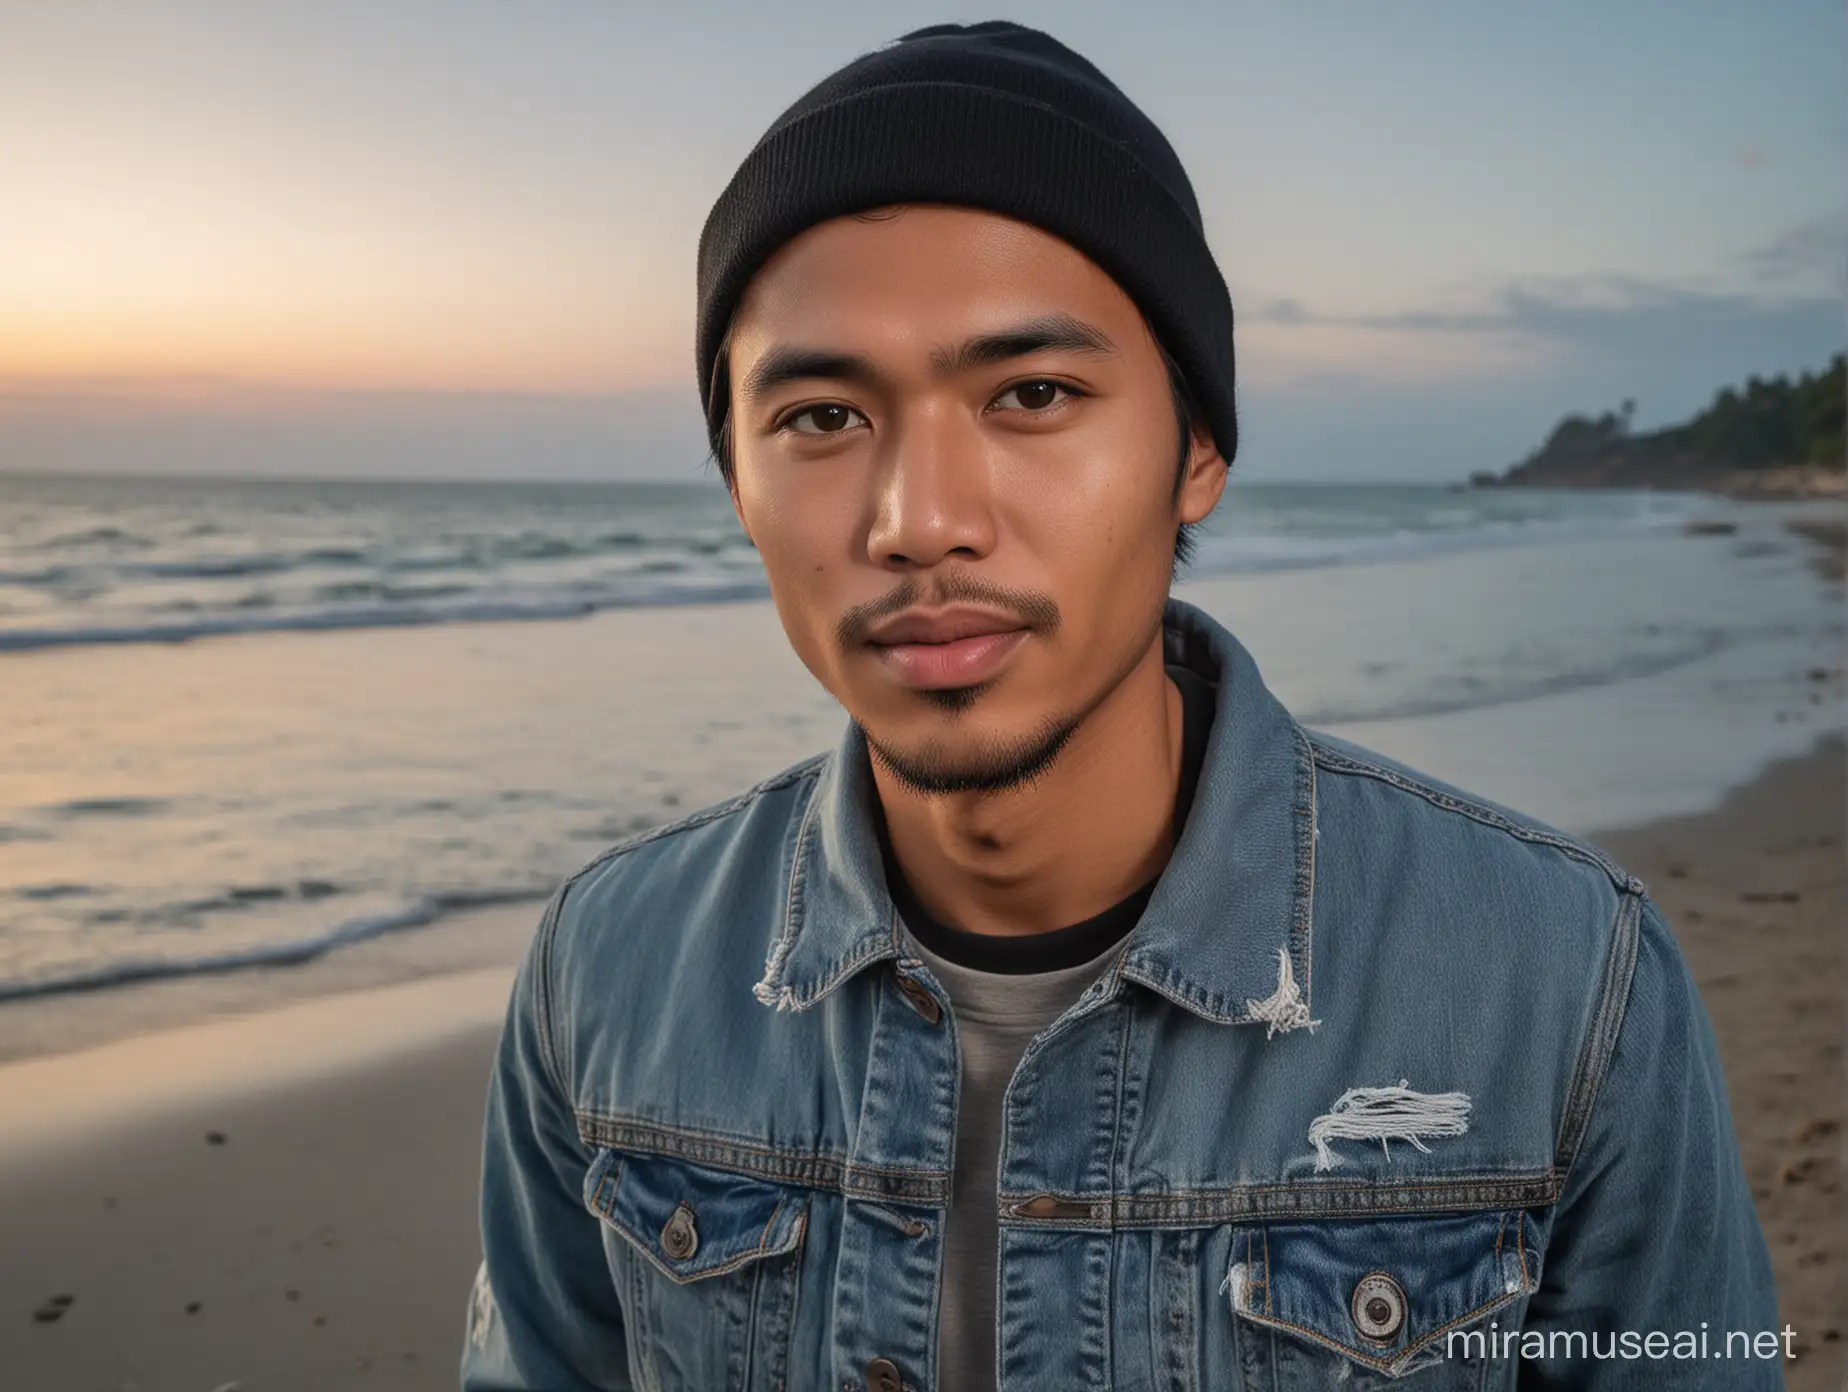 Friendly Indonesian Man in Black Beanie at Beach Edge